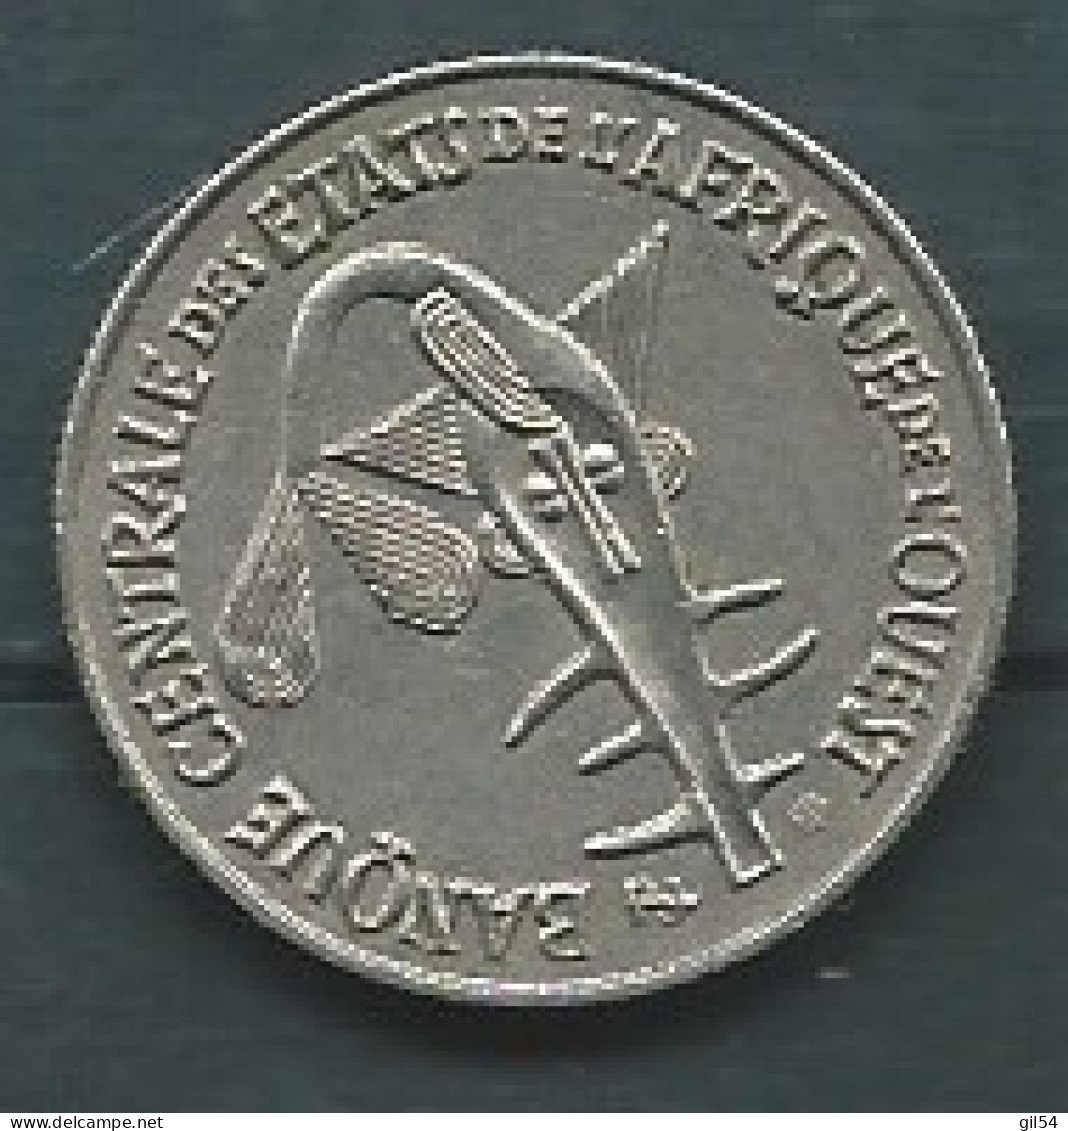 Monnaie Afrique De L'Ouest - 1972- 50 Francs  -  Pieb 24908 - Sonstige – Afrika